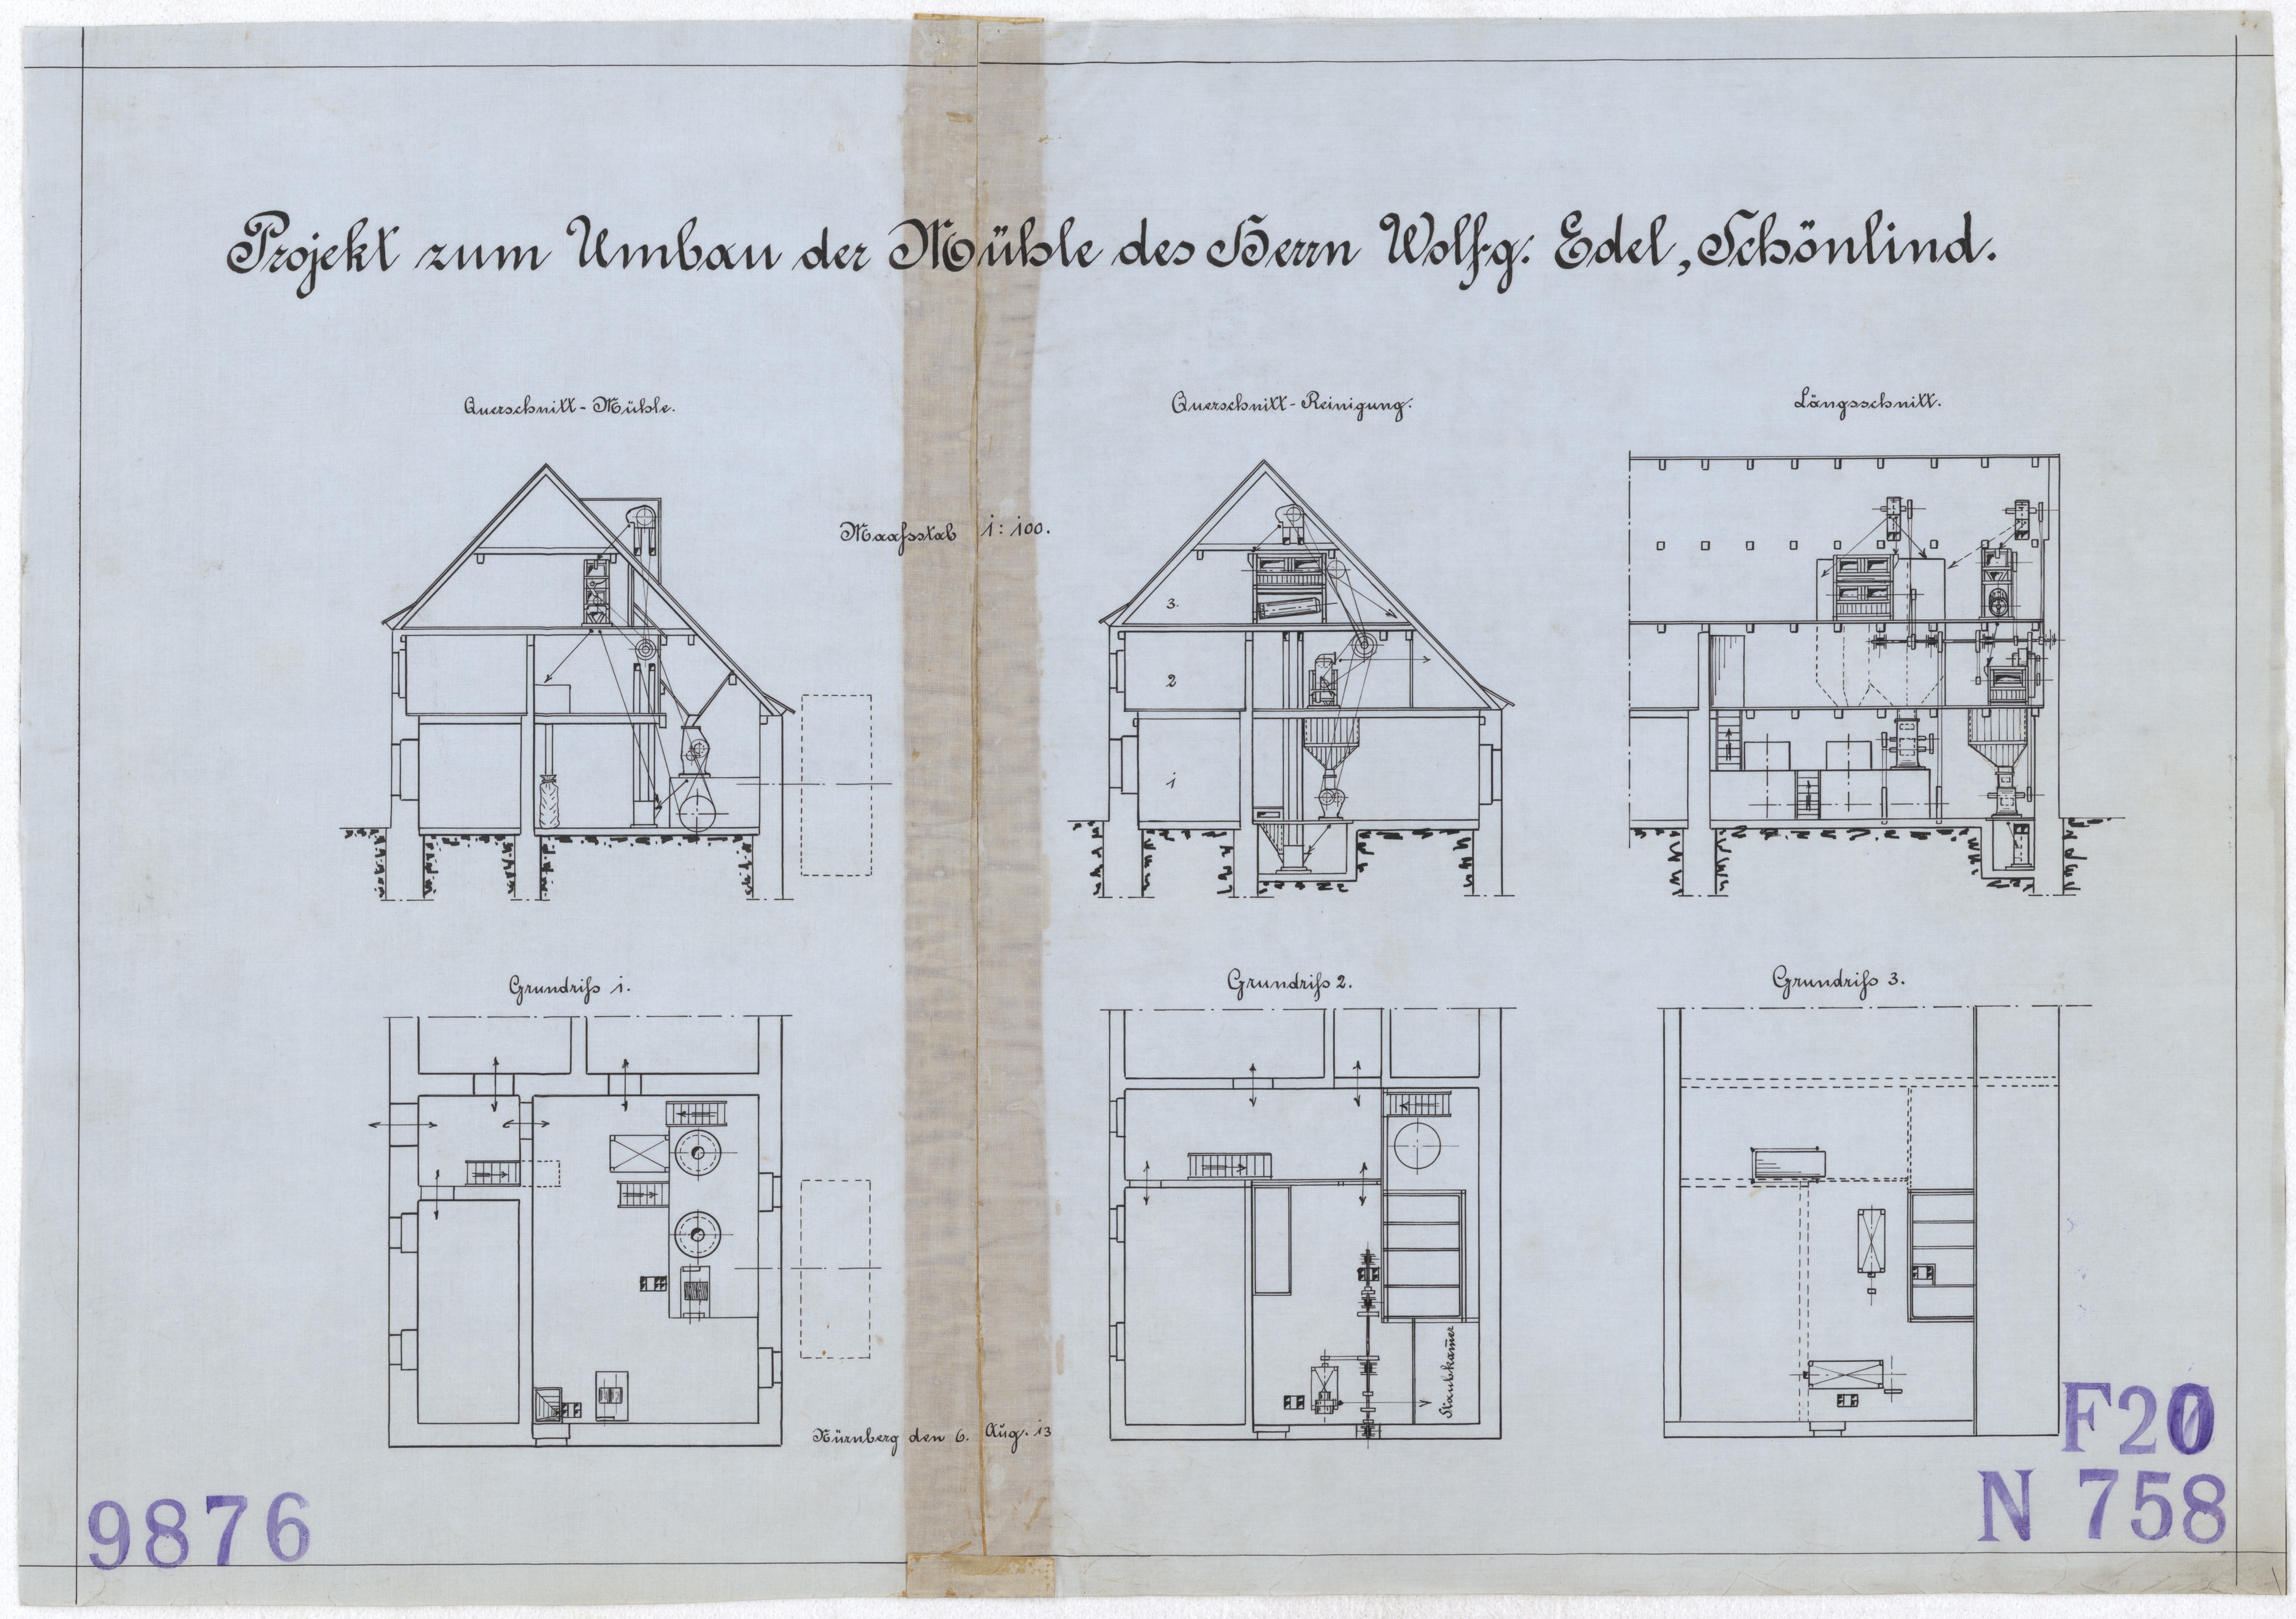 Technische Zeichnung : Projekt zum Umbau der Mühle des Herrn Wolfg. Edel, Schönlind (Stiftung Deutsches Technikmuseum Berlin CC BY-SA)